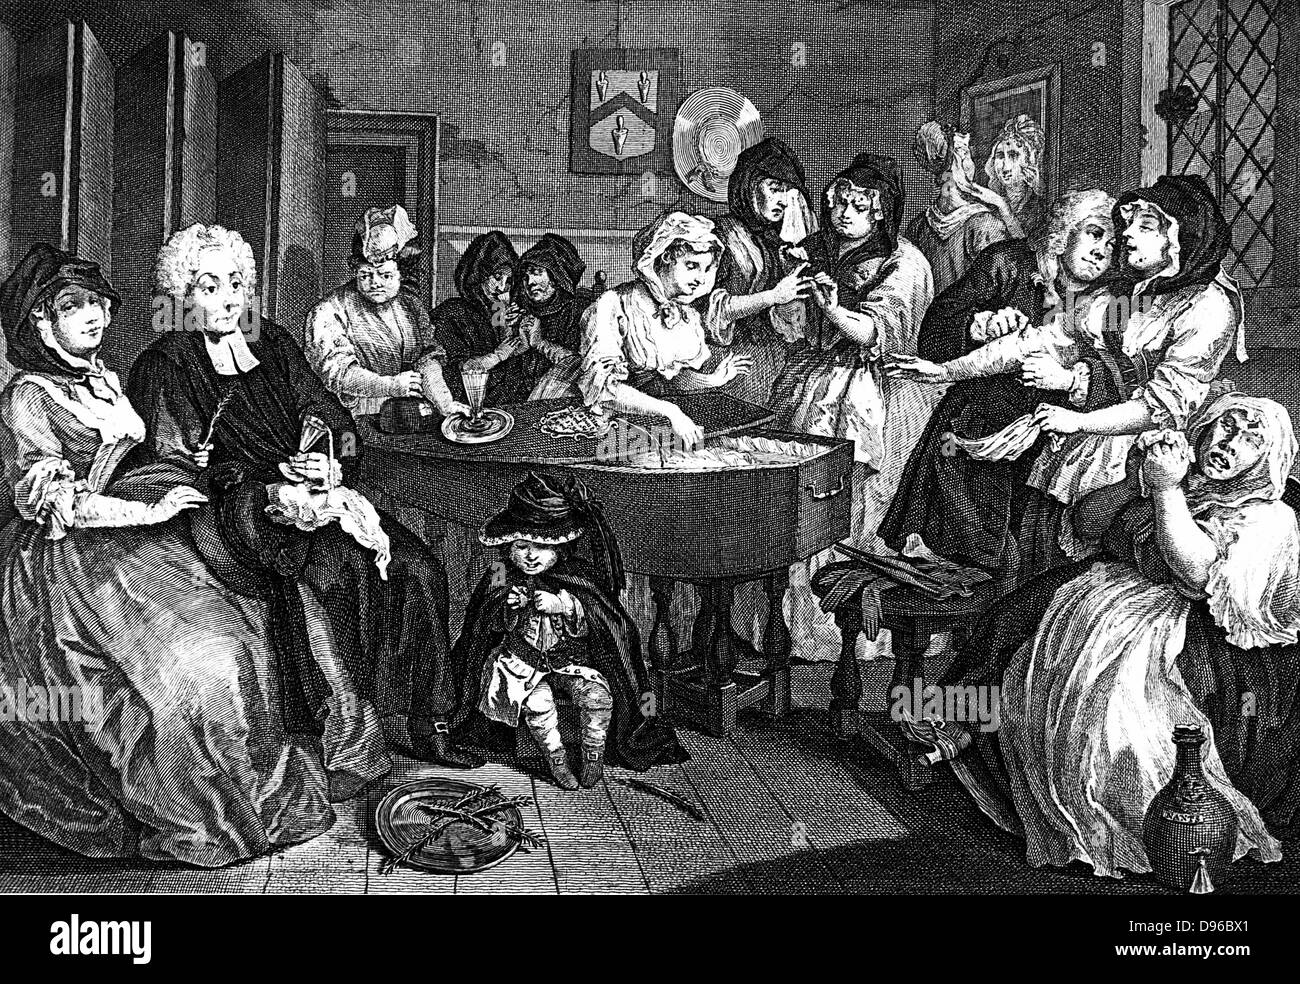 Kate Hackabout, die Hure, in ihrem Sarg gelegt. Sechste und letzte Platte in William Hogarth's Serie "Der Hure Fortschritt" (1733). William Beckford kaufte die originalen Gemälden, die in der Feuer an Fonthill im Jahre 1755 zerstört wurden. Gravur Stockfoto